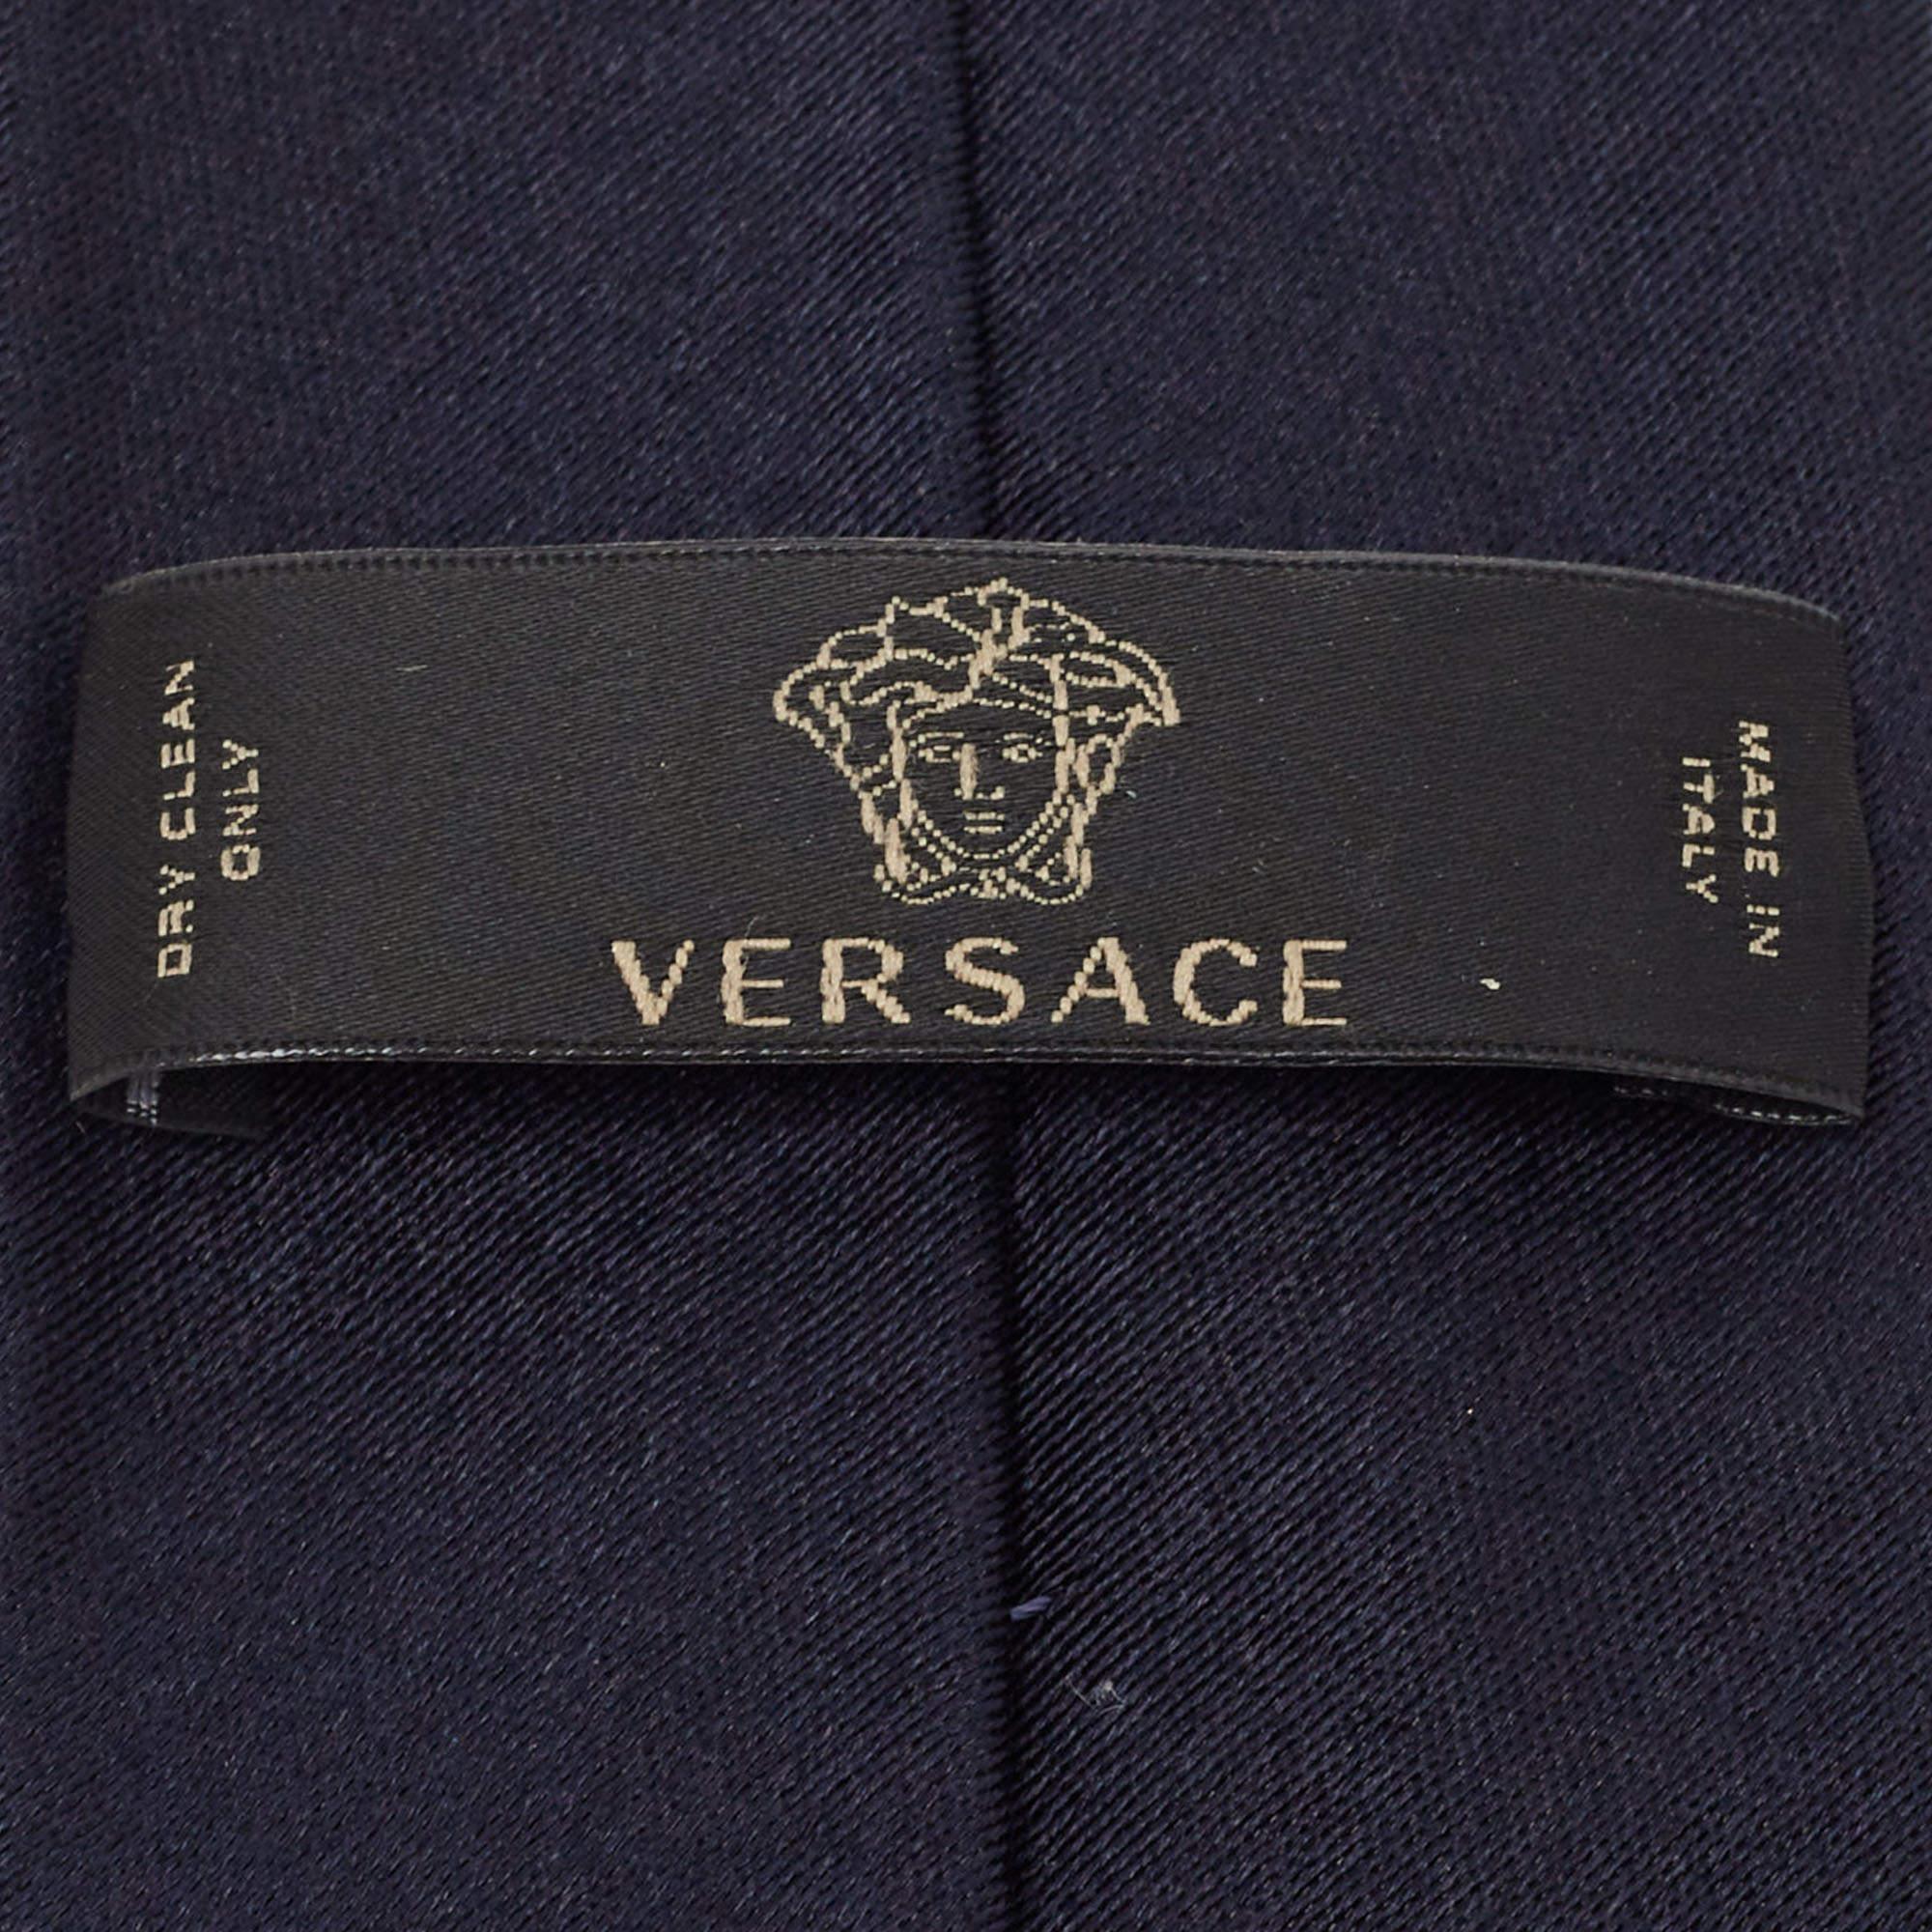 Men's Versace Navy Blue Medusa Patterned Silk Tie